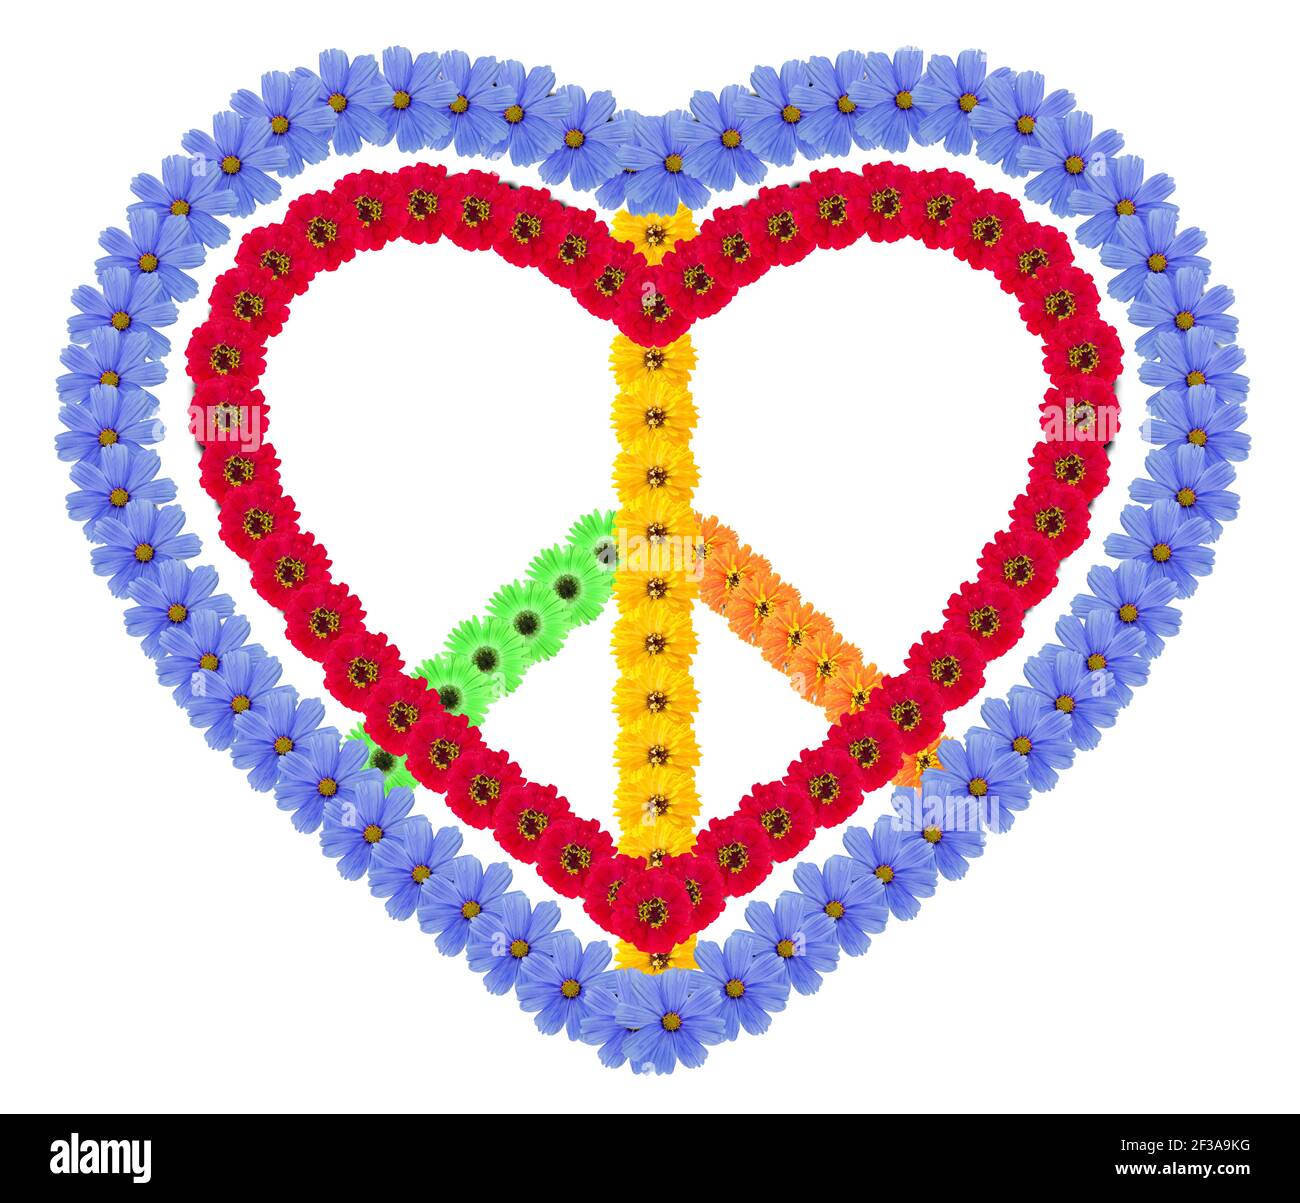 Simbolo nativo dell'amore e della pace fatto fiori di fda. Collage fotografico isolato fatto a mano Foto Stock